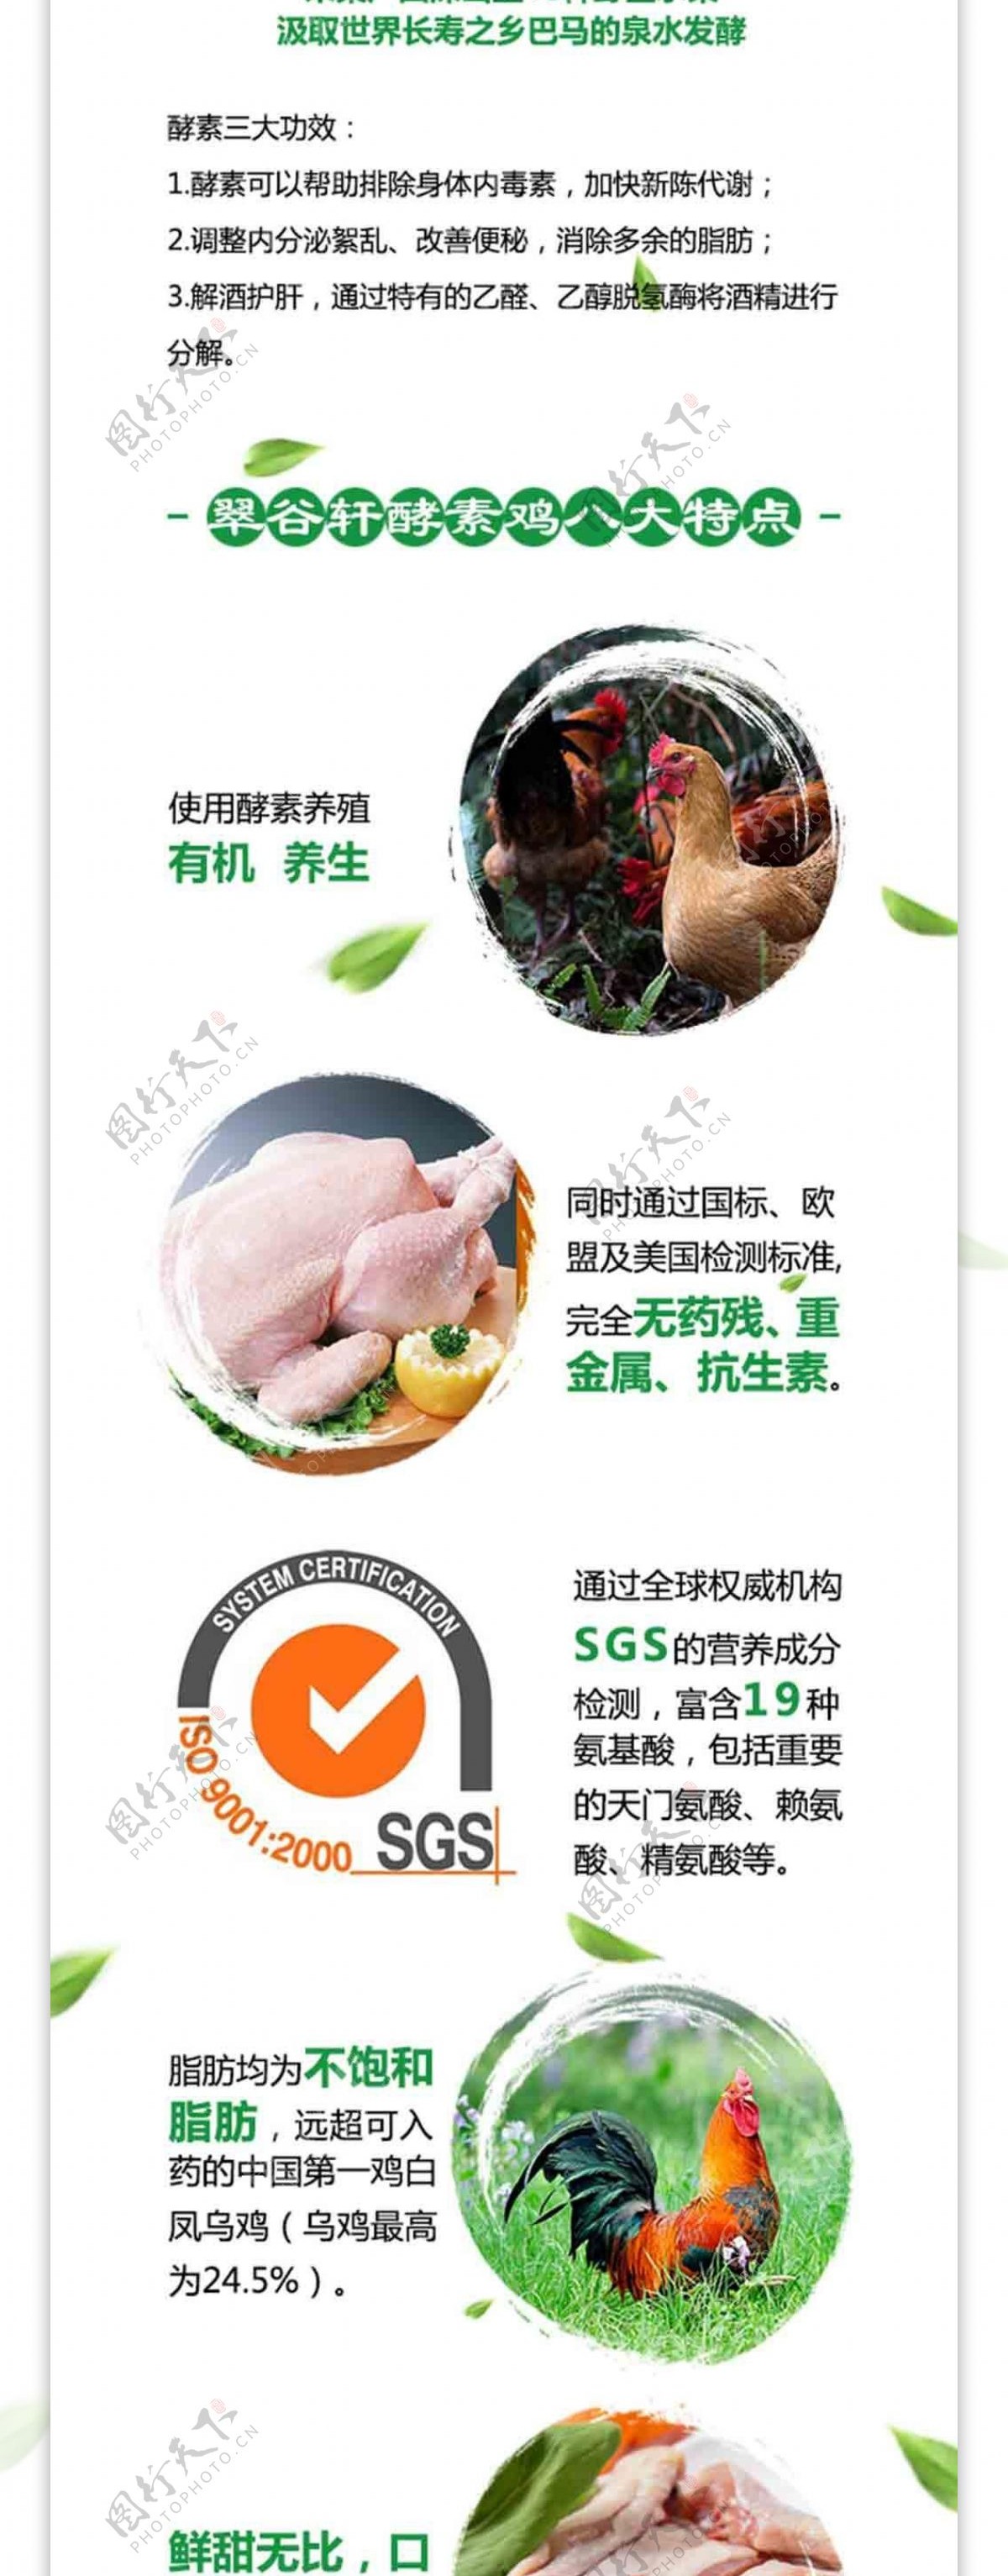 翠谷轩酵素鸡